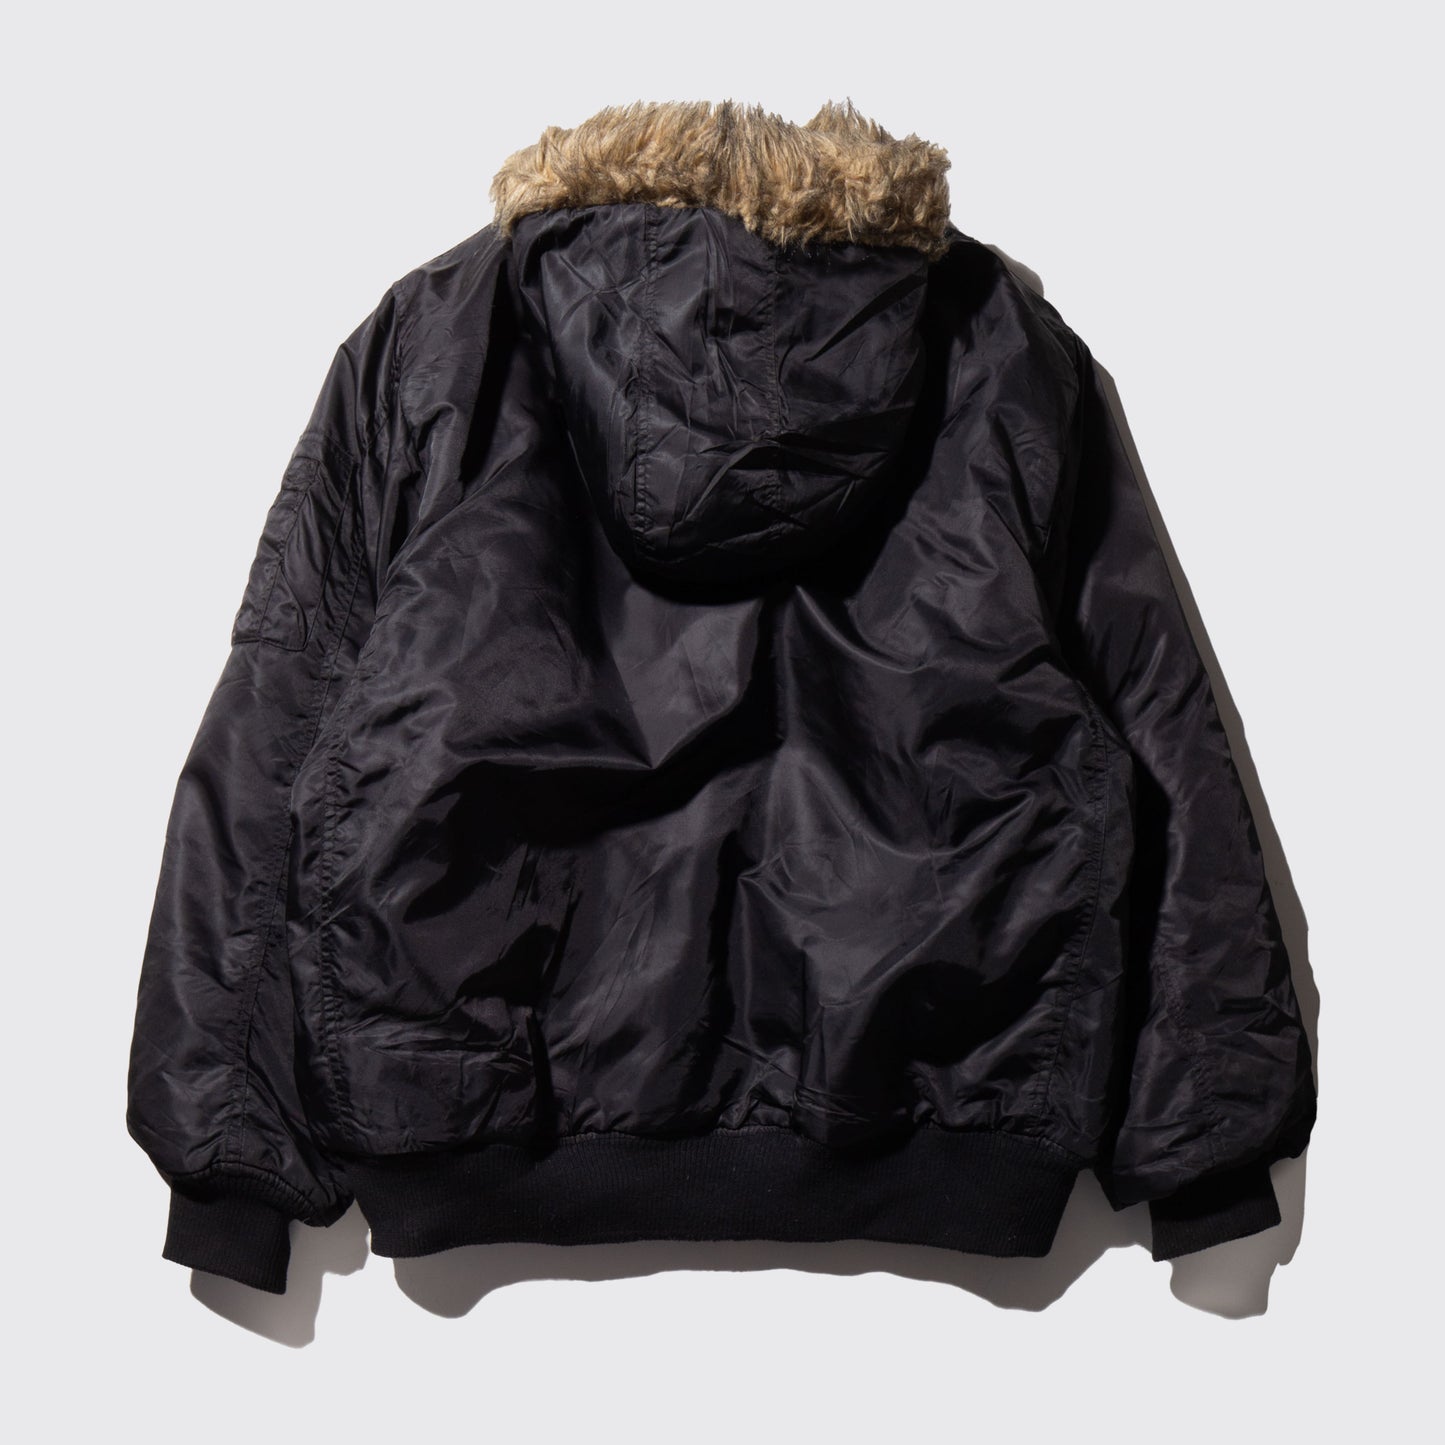 vintage hooded bomber jacket